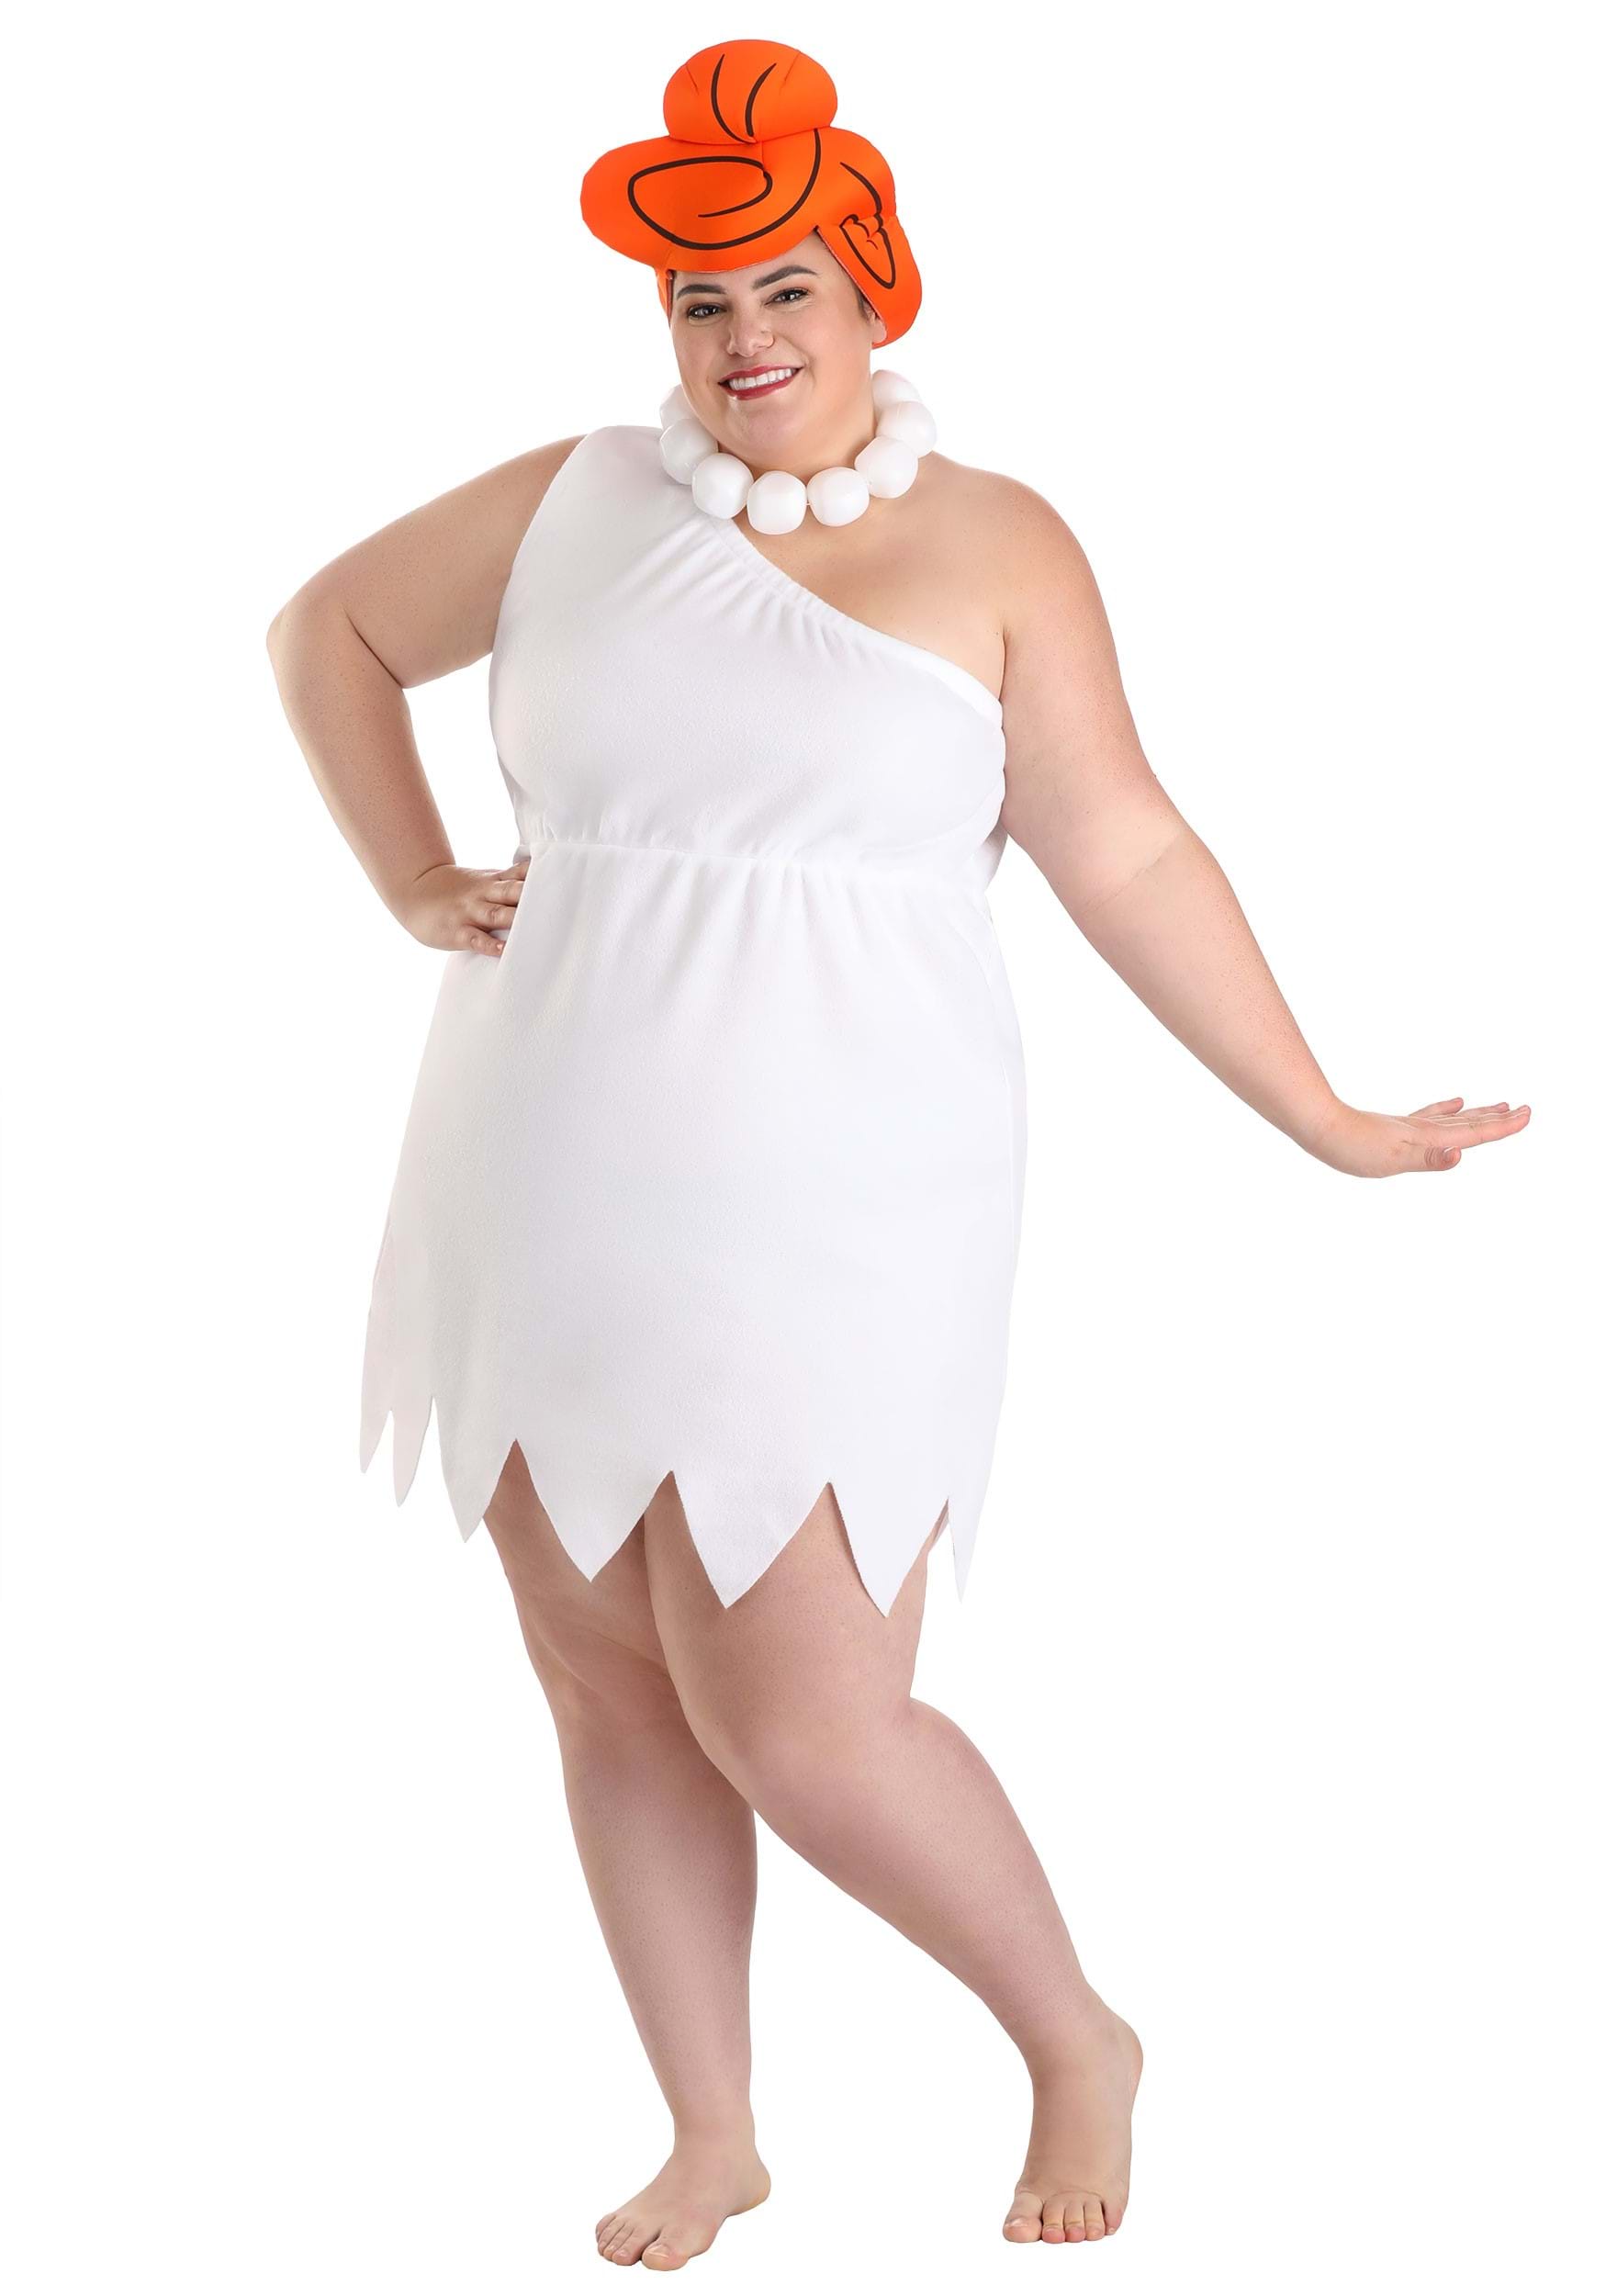 Plus Size Women's Wilma Flintstone Fancy Dress Costume , Plus Size Fancy Dress Costumes